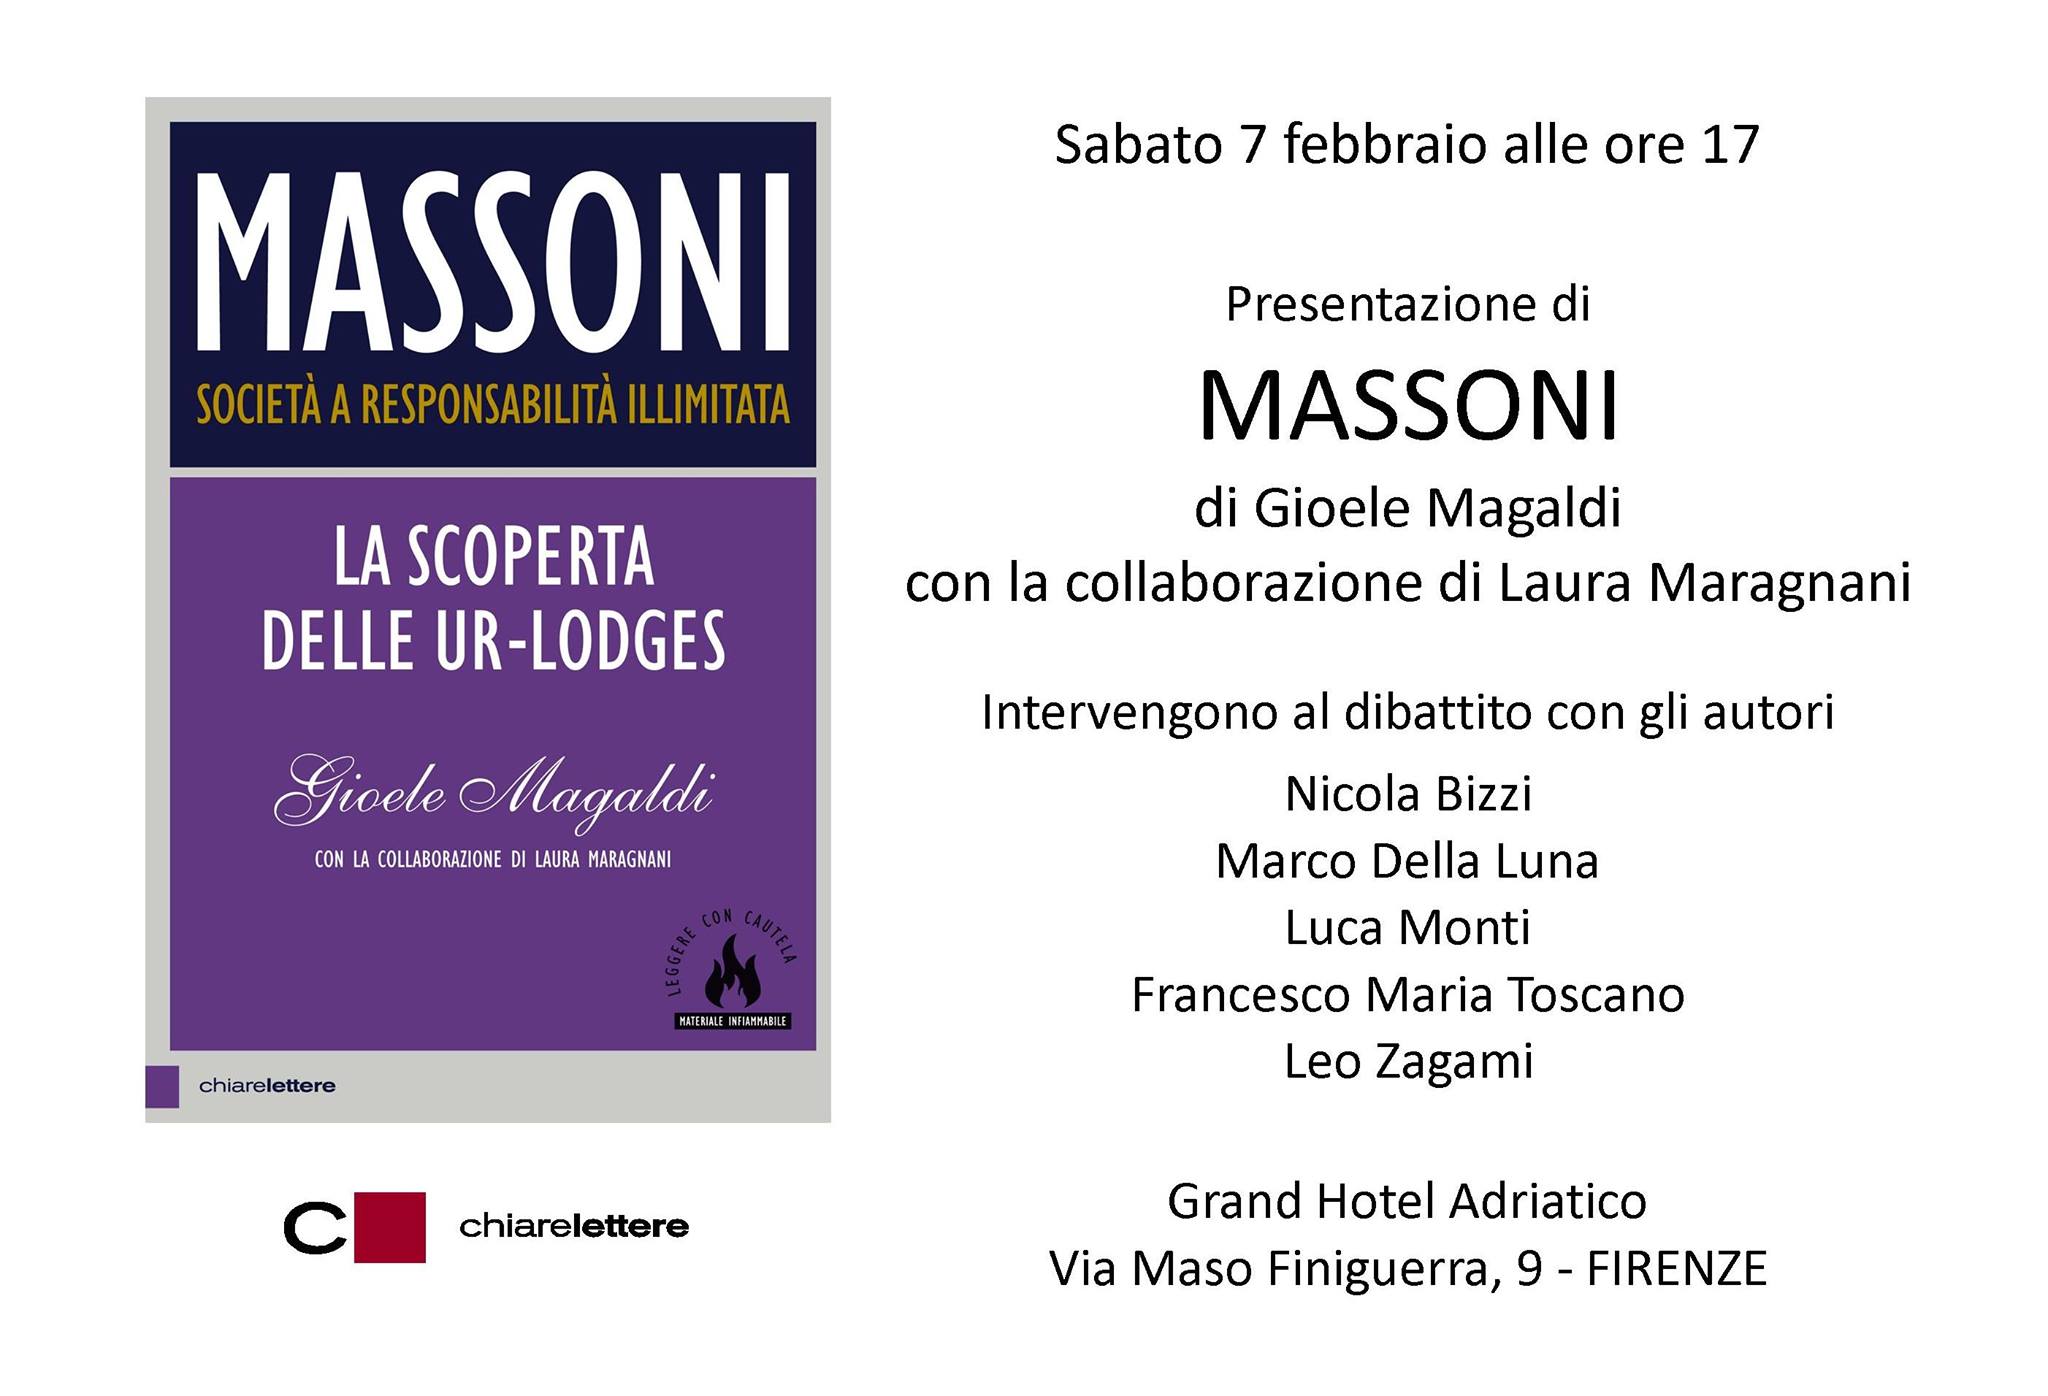 Presentazione "Massoni S.r.i" a Firenze il 7 febbraio 2015